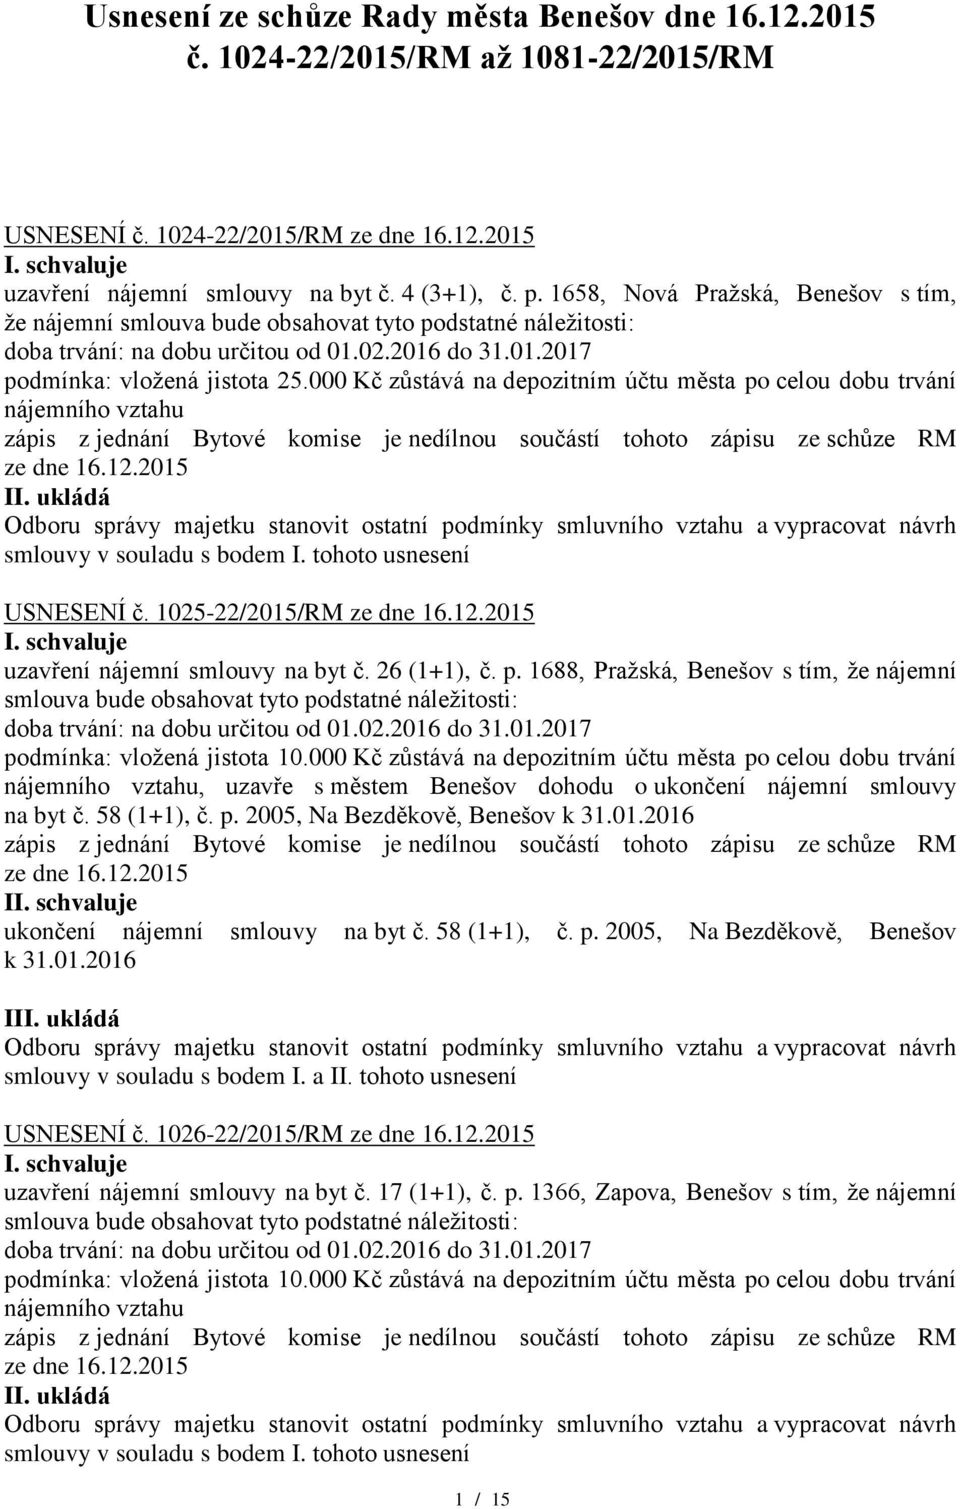 p. 1688, Pražská, Benešov s tím, že nájemní, uzavře s městem Benešov dohodu o ukončení nájemní smlouvy na byt č. 58 (1+1), č. p. 2005, Na Bezděkově, Benešov k 31.01.